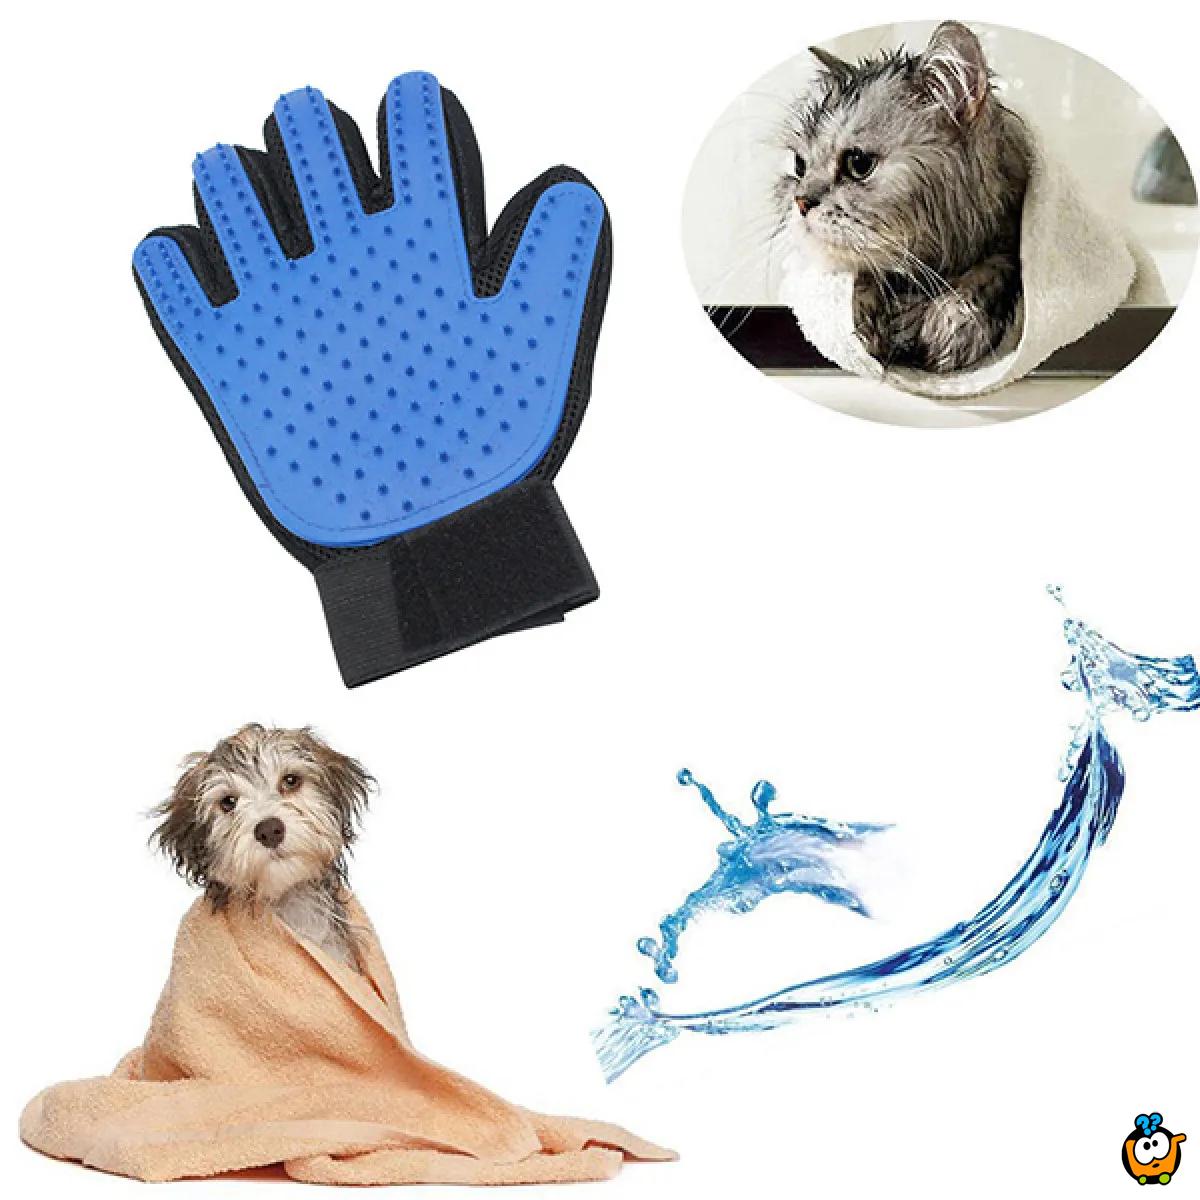 True Touch Pet Glove - Čarobna rukavica za nežno i detaljno doterivanje dlake  ljubimca